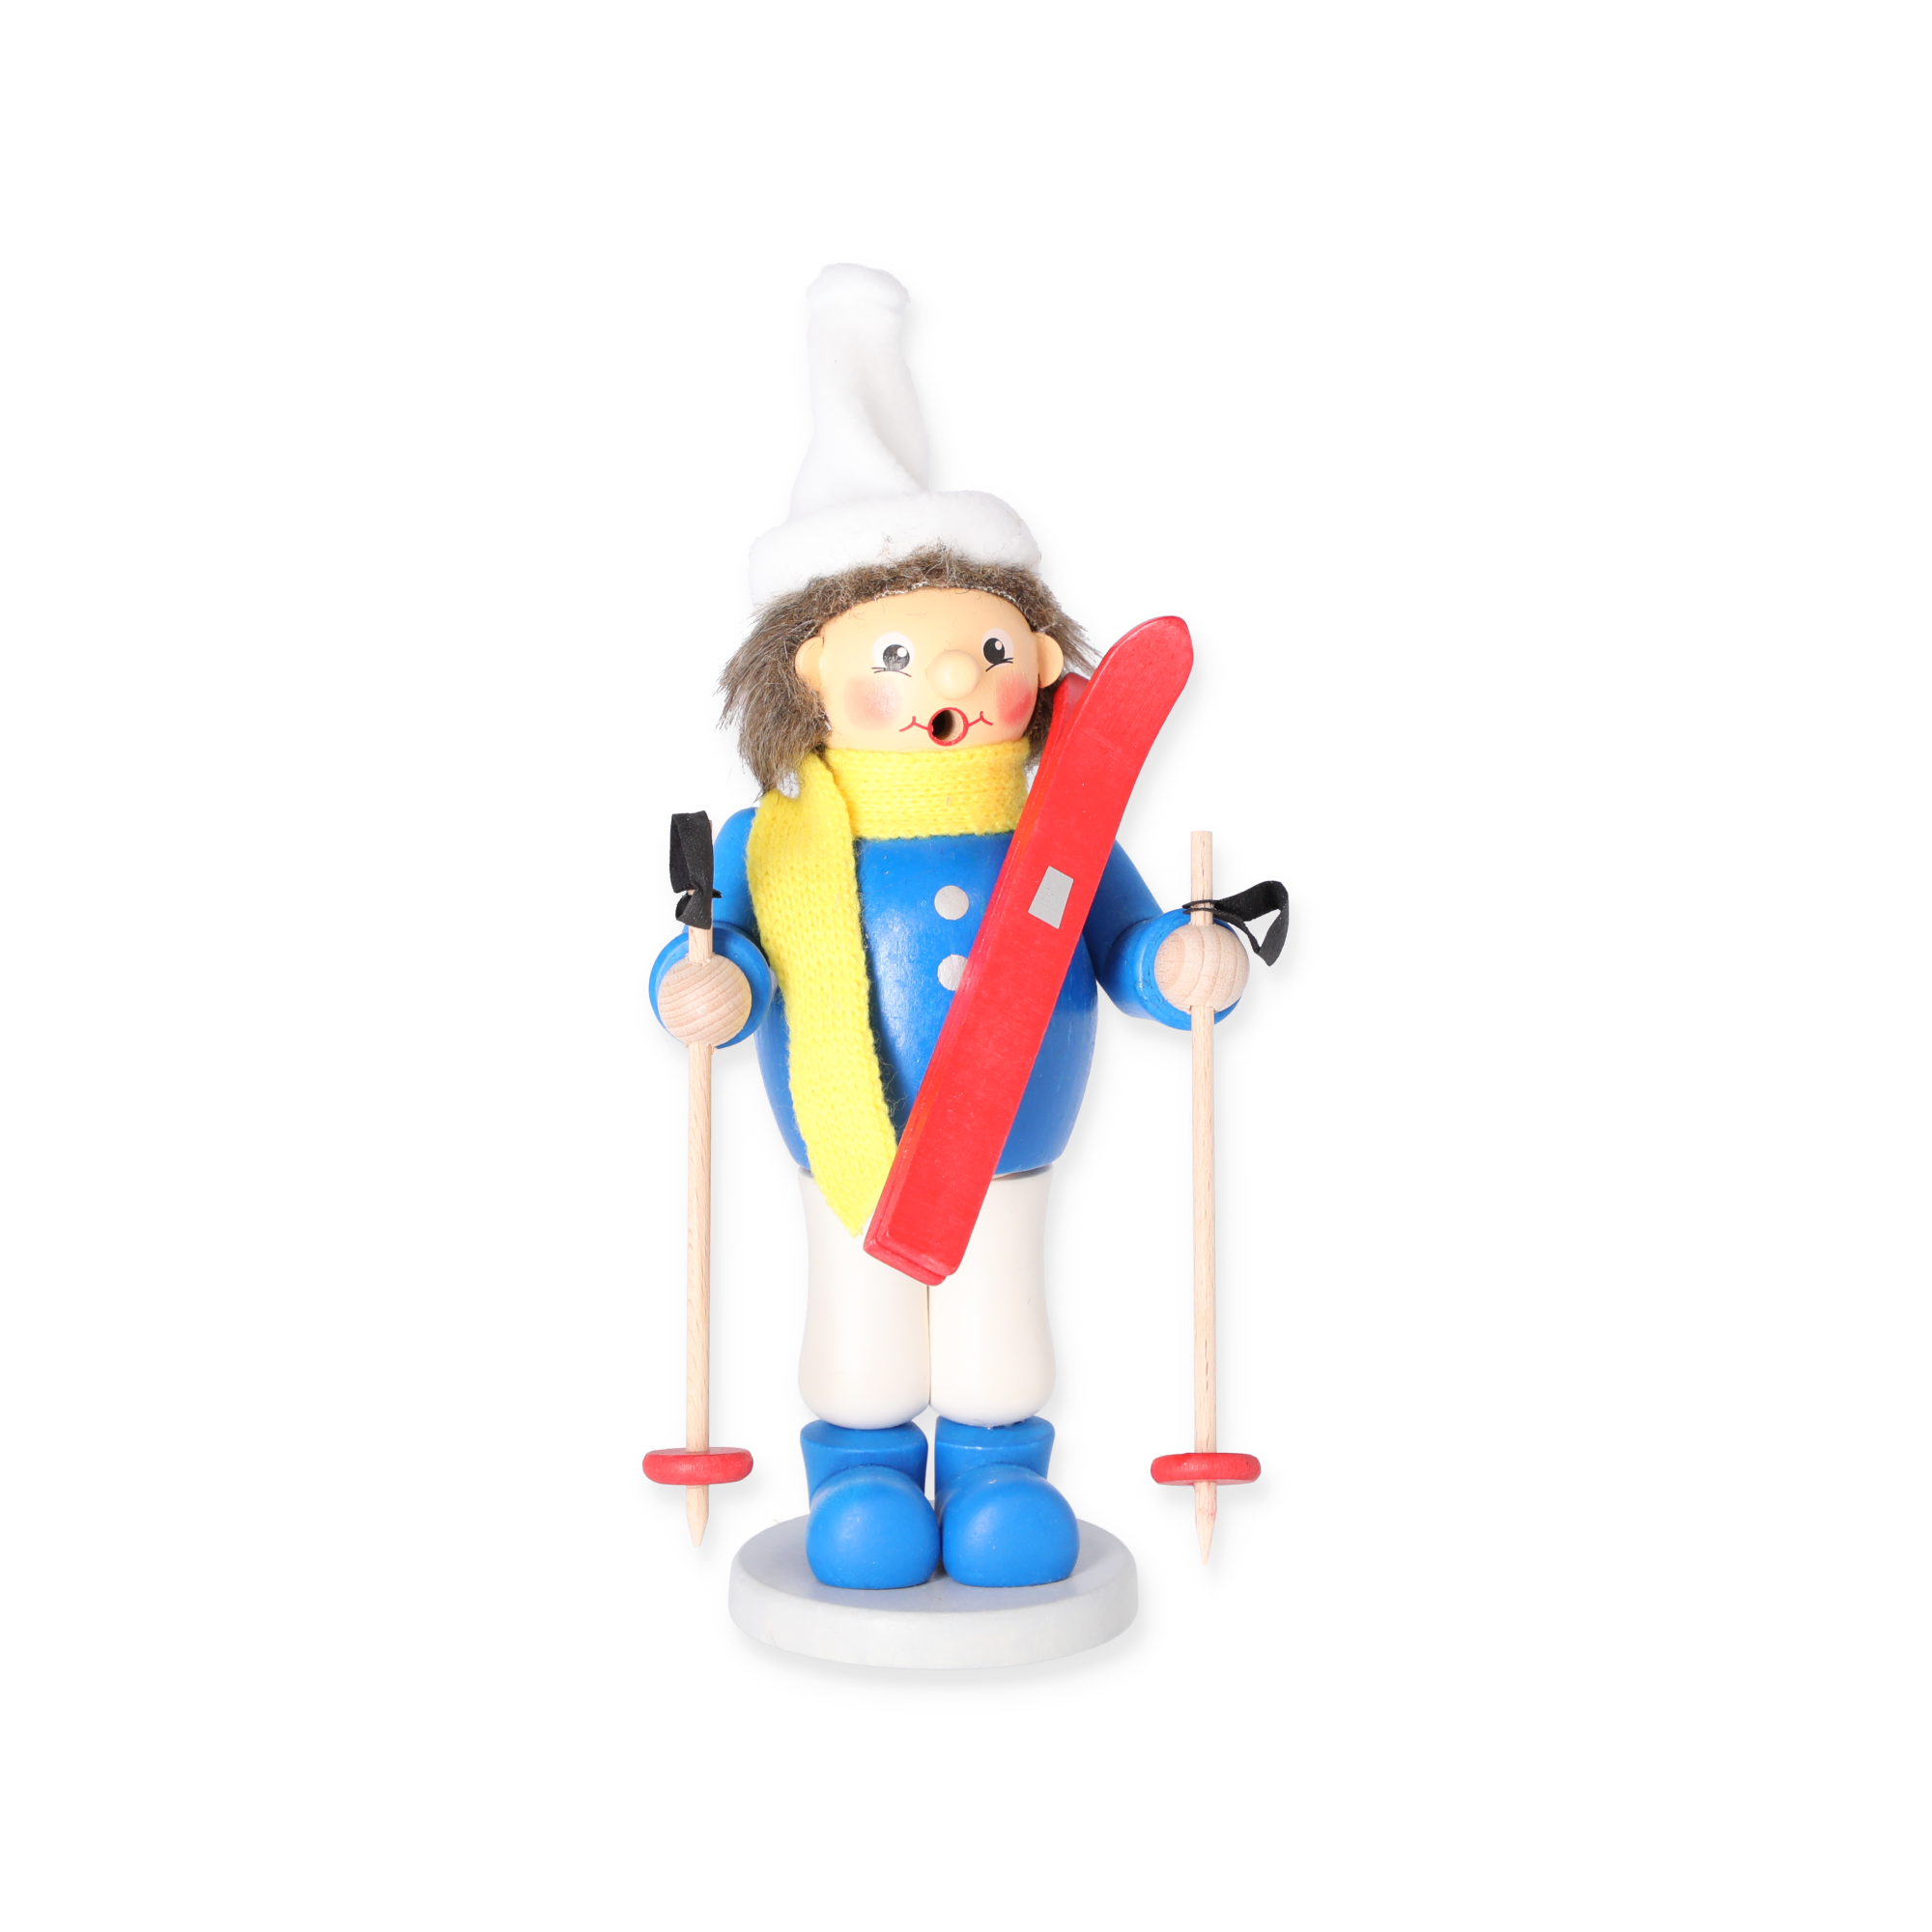 Räucherfigur 'Junge mit Ski' bunt 23 cm + product picture